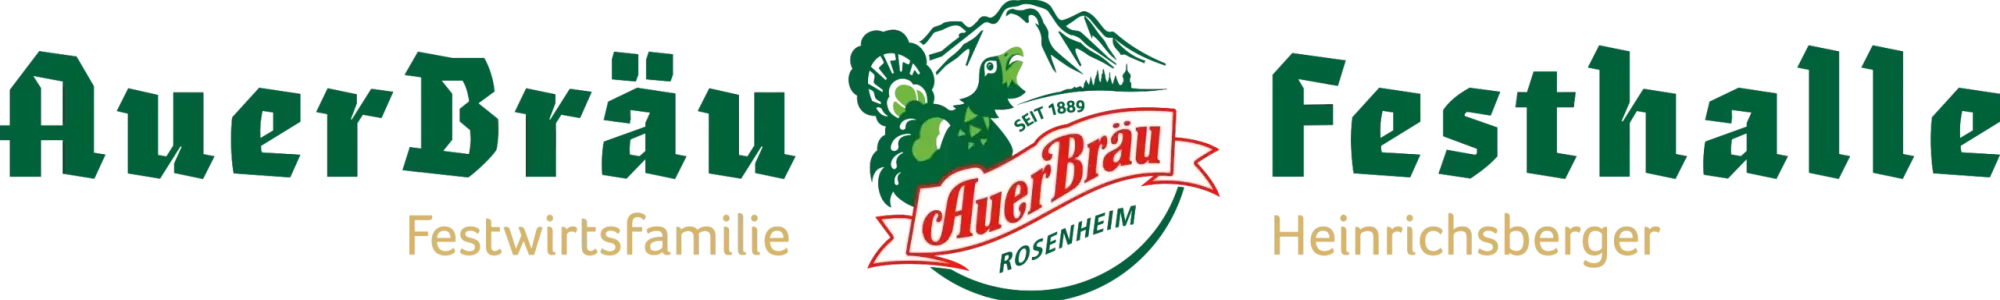 Logo des Veranstaltungsortes des Rosenheimer Herbstfestes, Auerbräu-Festhalle